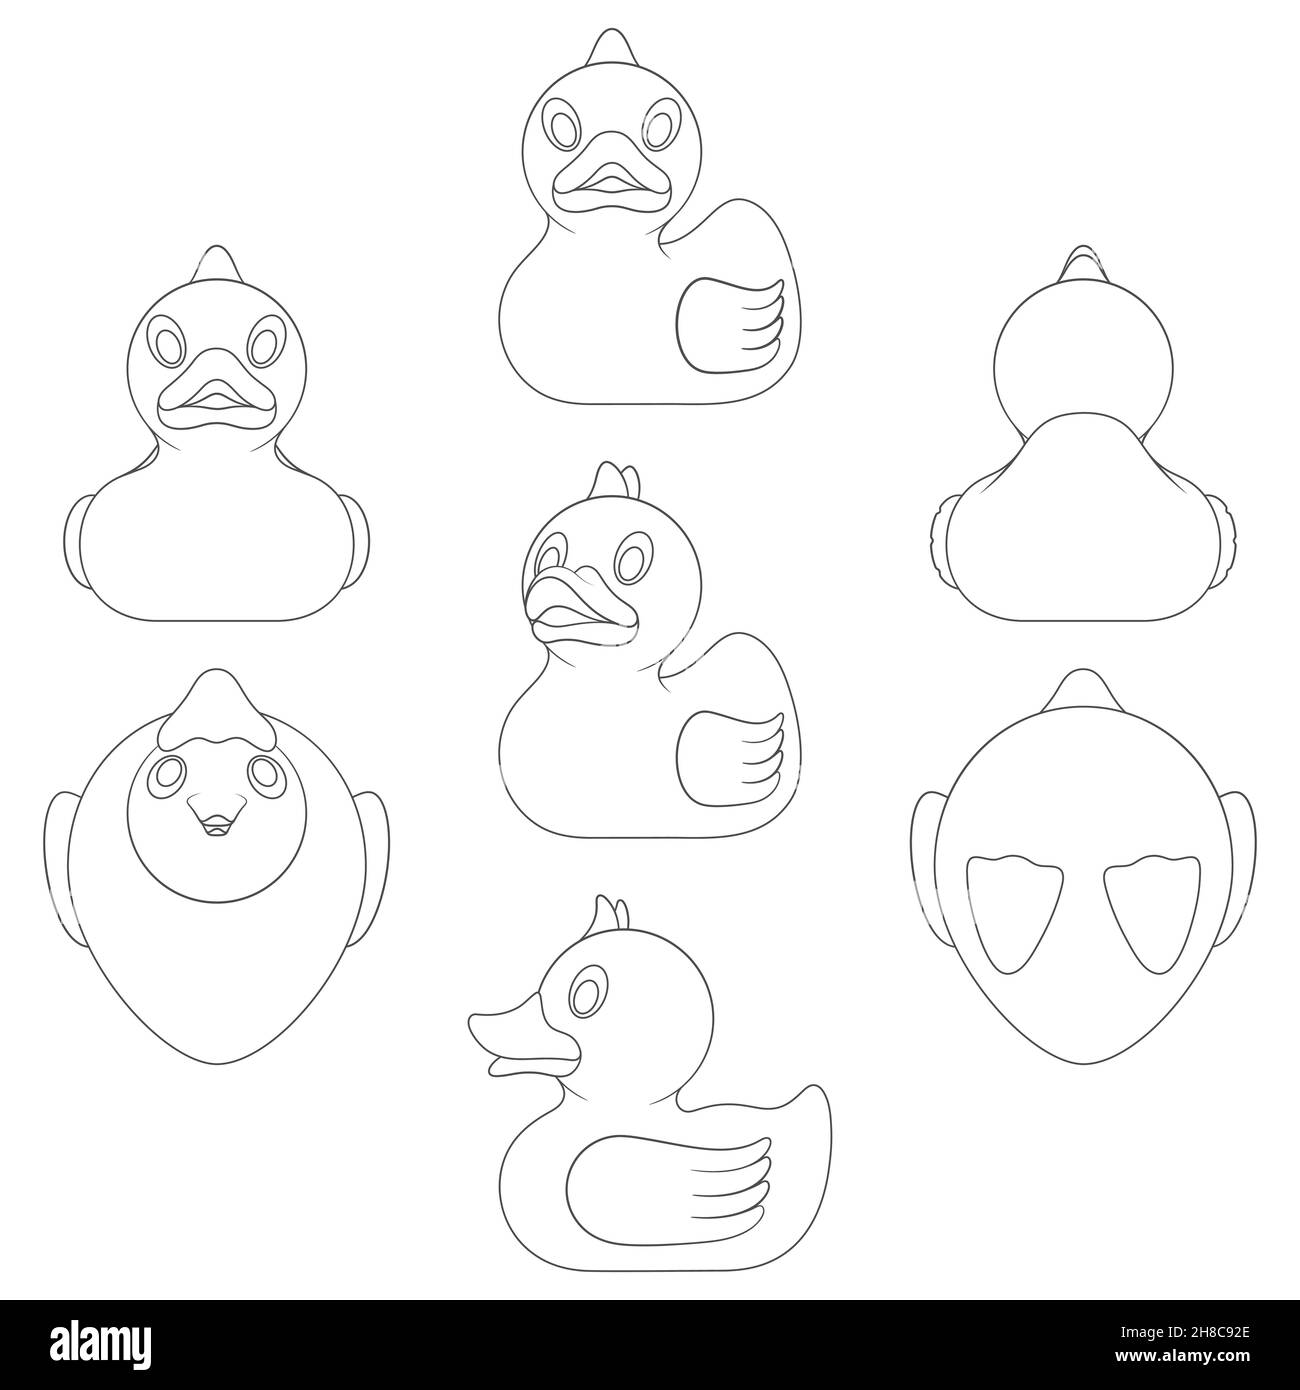 Set aus Schwarz-Weiß-Bildern mit einer Spielzeug-Ente in verschiedenen Winkeln. Isolierte Vektorobjekte auf weißem Hintergrund. Stock Vektor